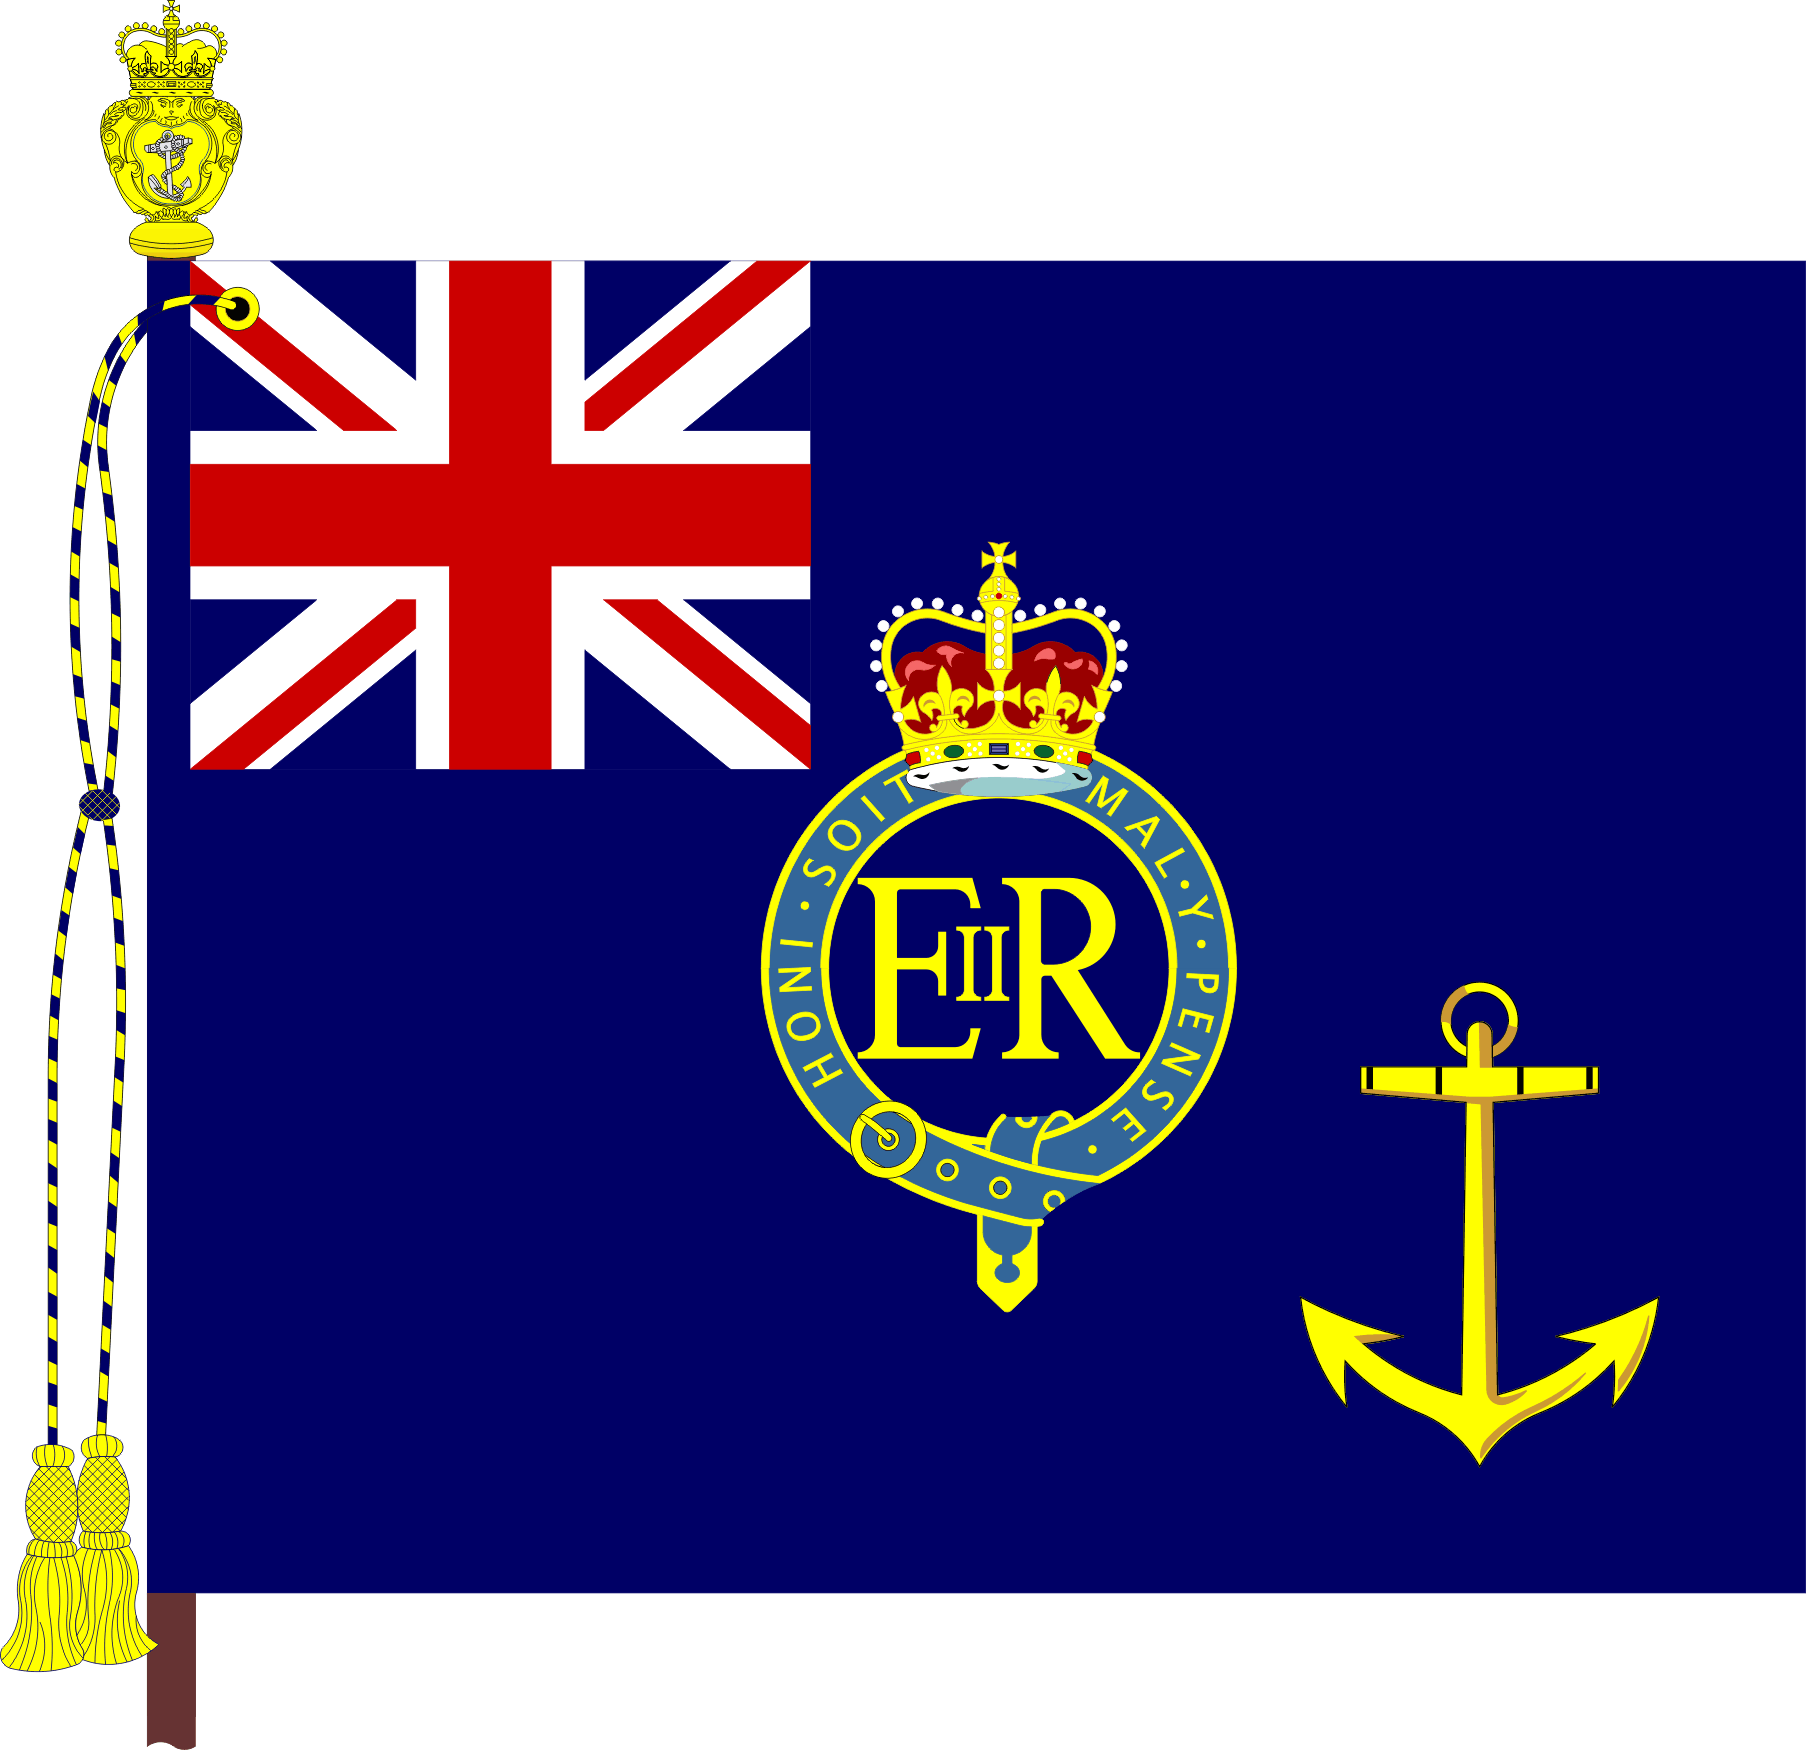 Royal Fleet Auxiliary Military England Flag Cufflinks 